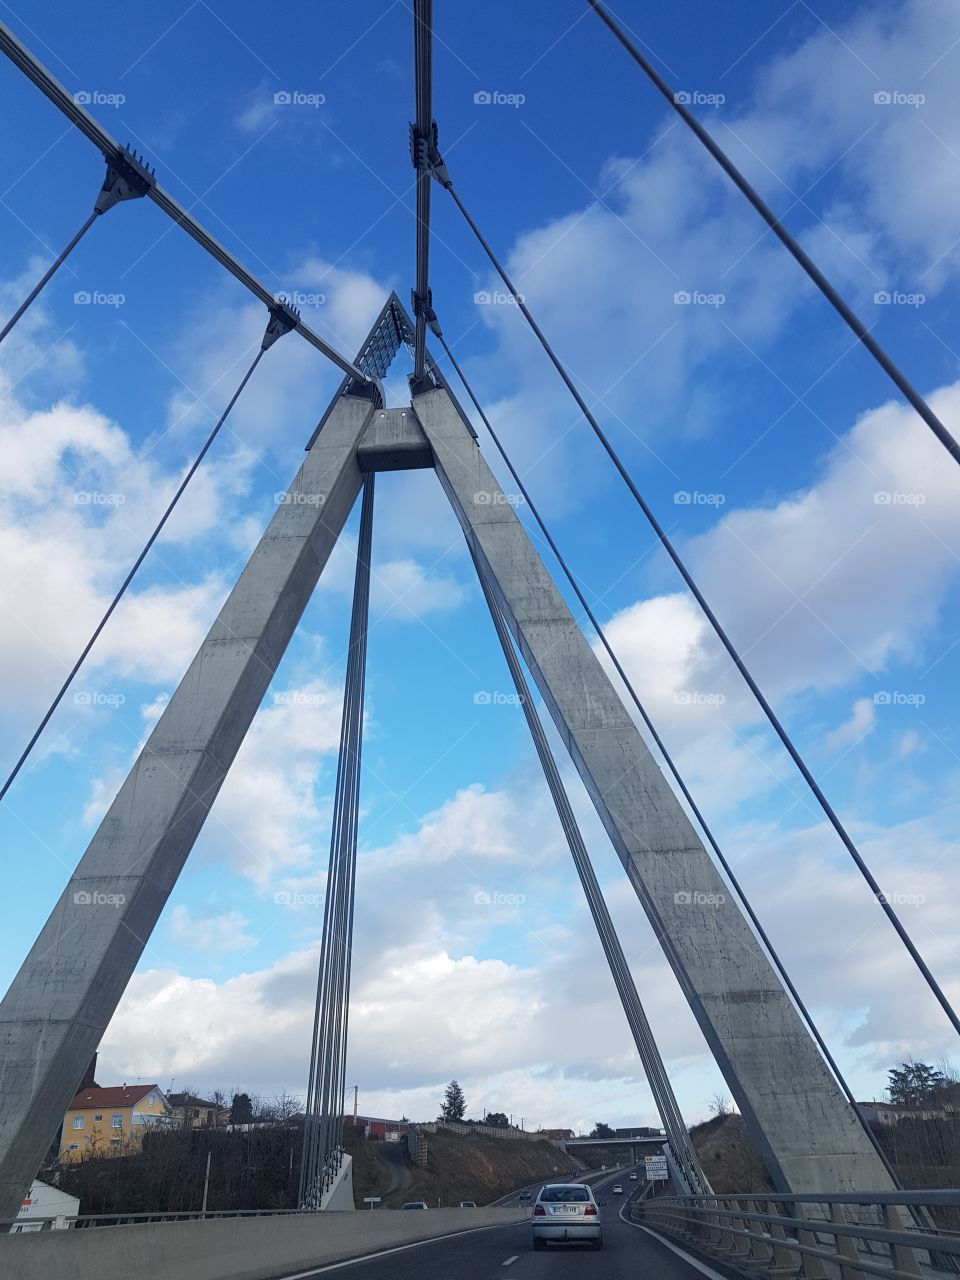 bridge triangular